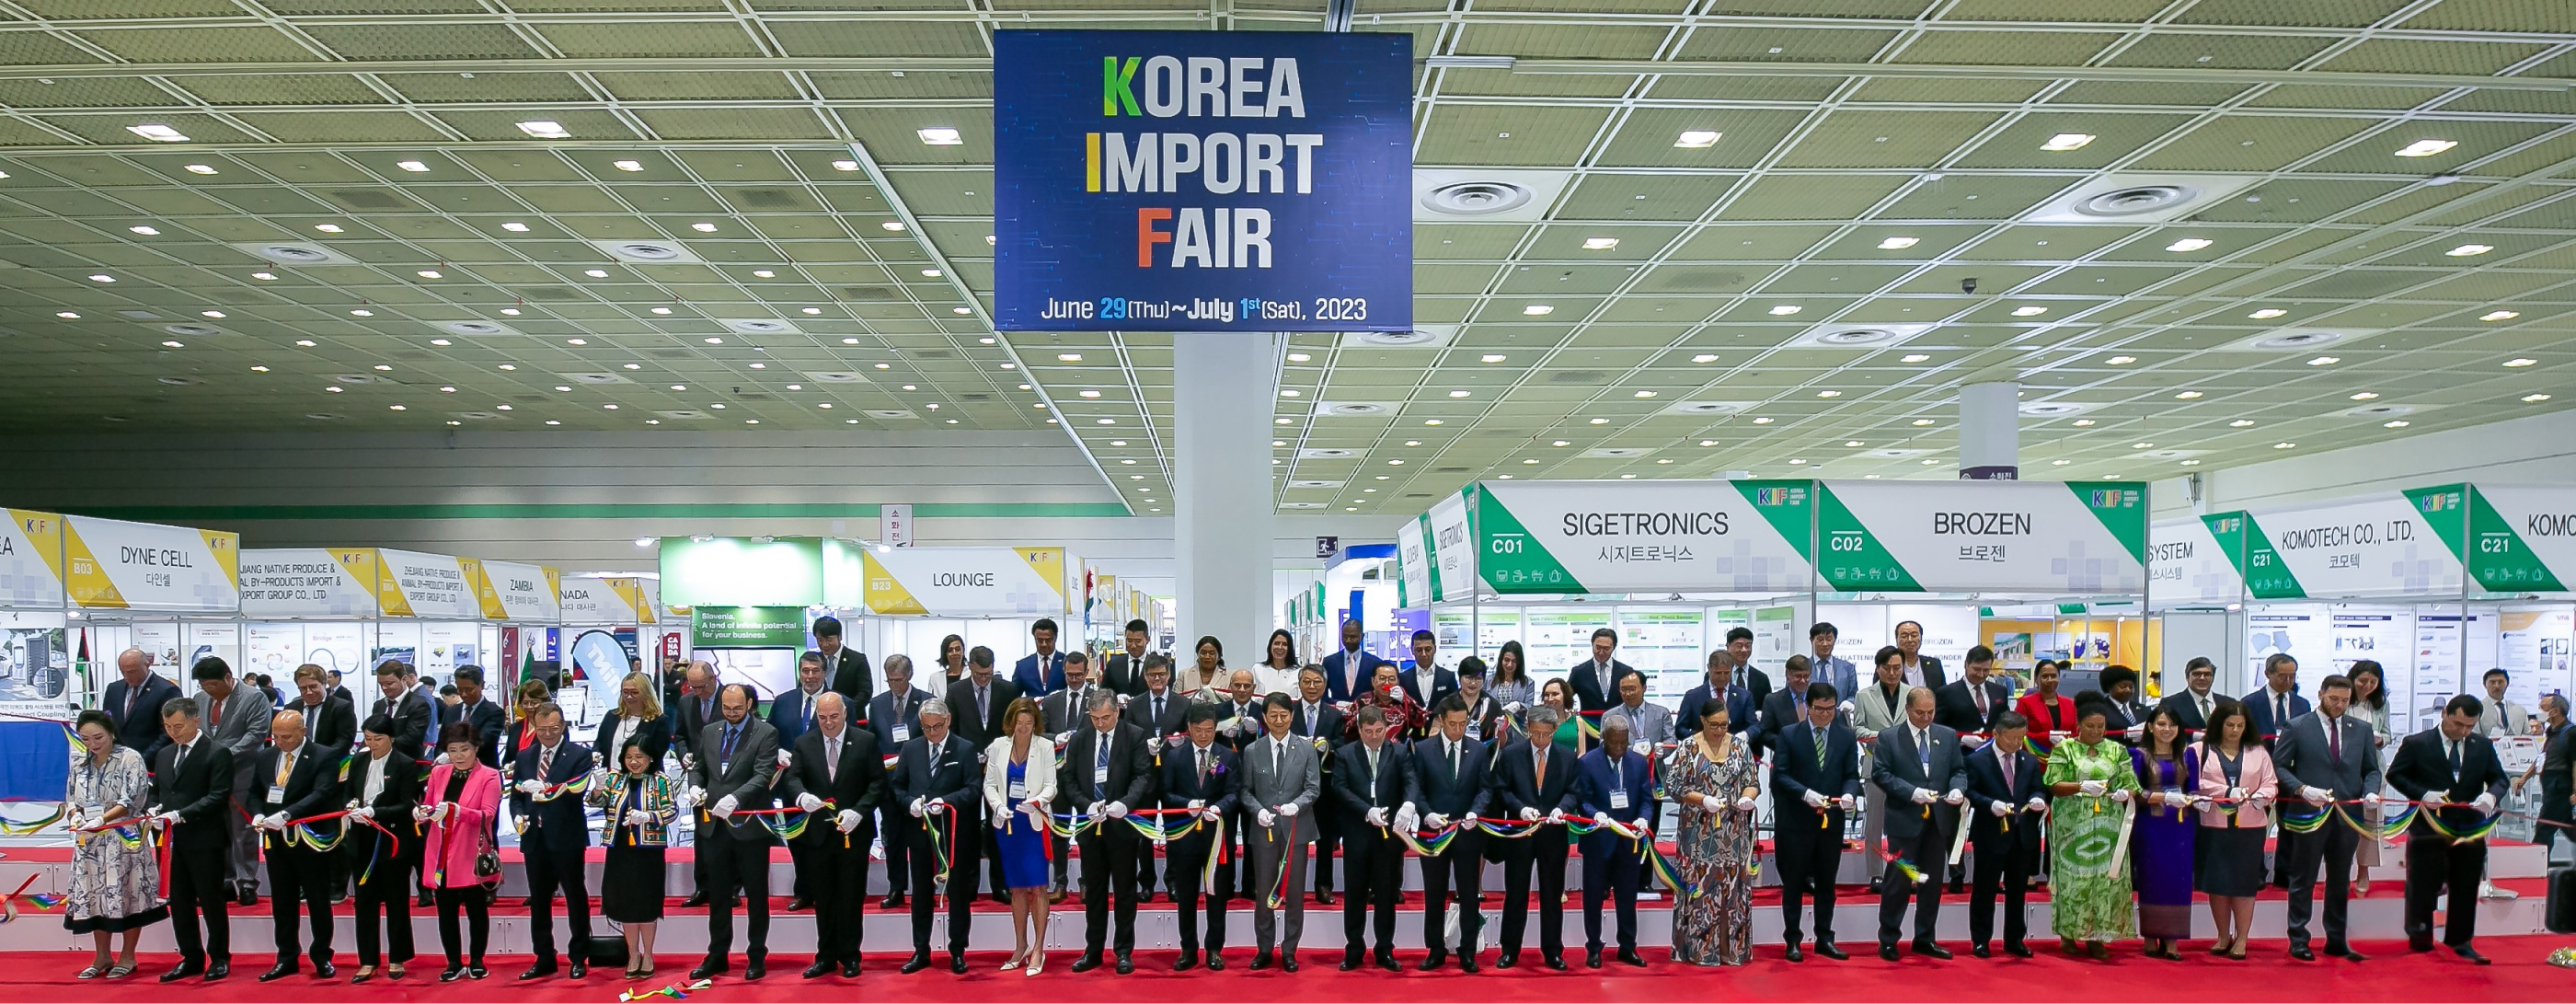 2022년 한국 수입 박람회장 개막식 사진. 관계자 수십명이 정면을 보고 서있다.